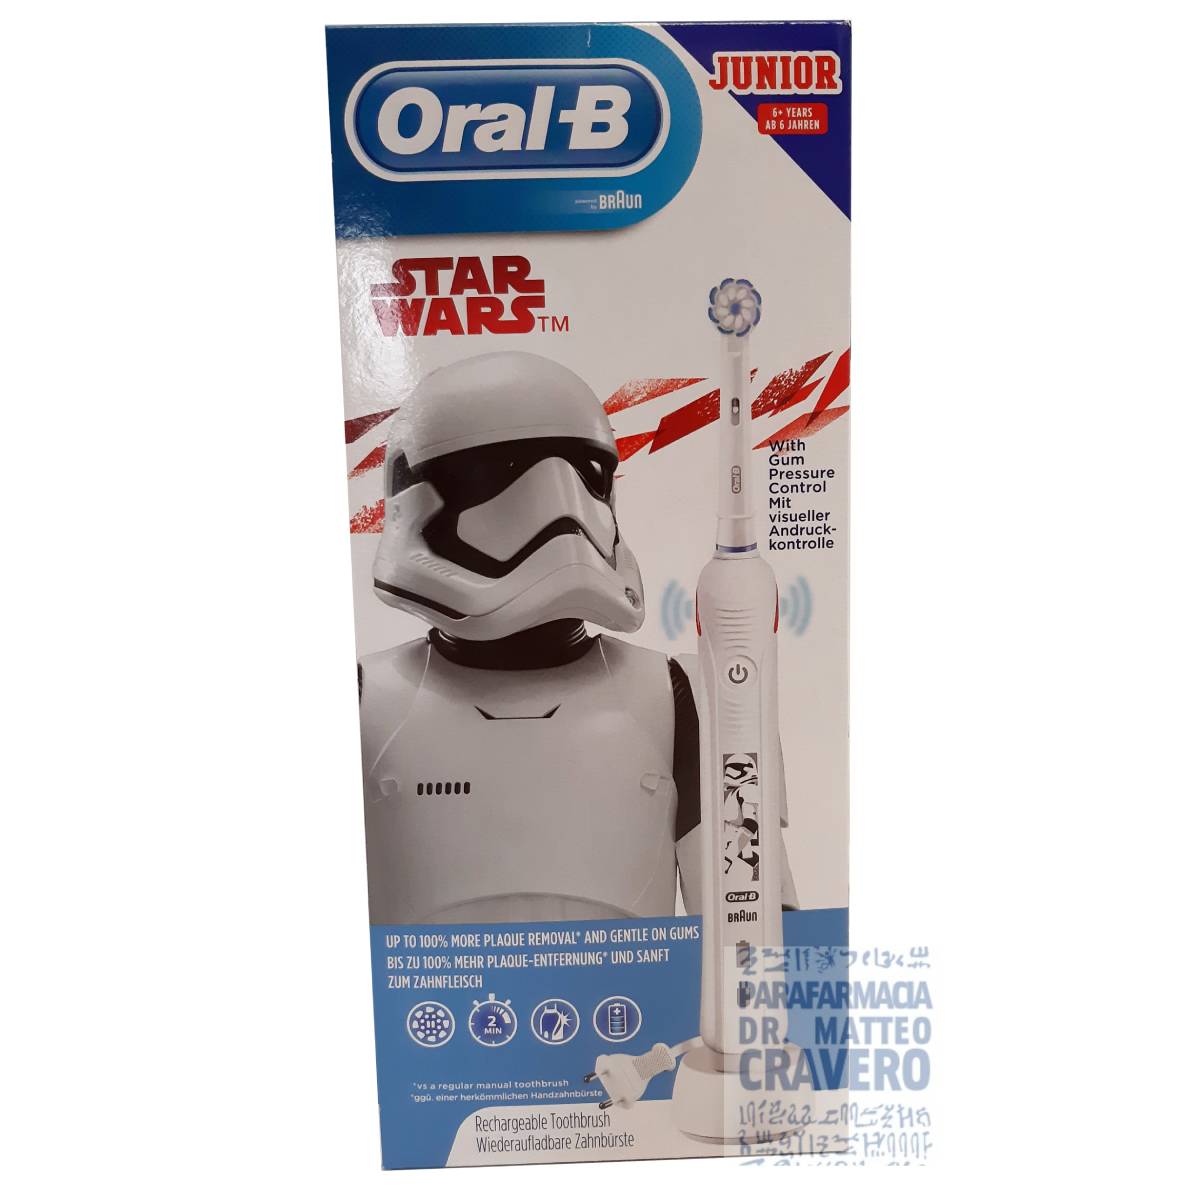 OralB power pro 2 star wars